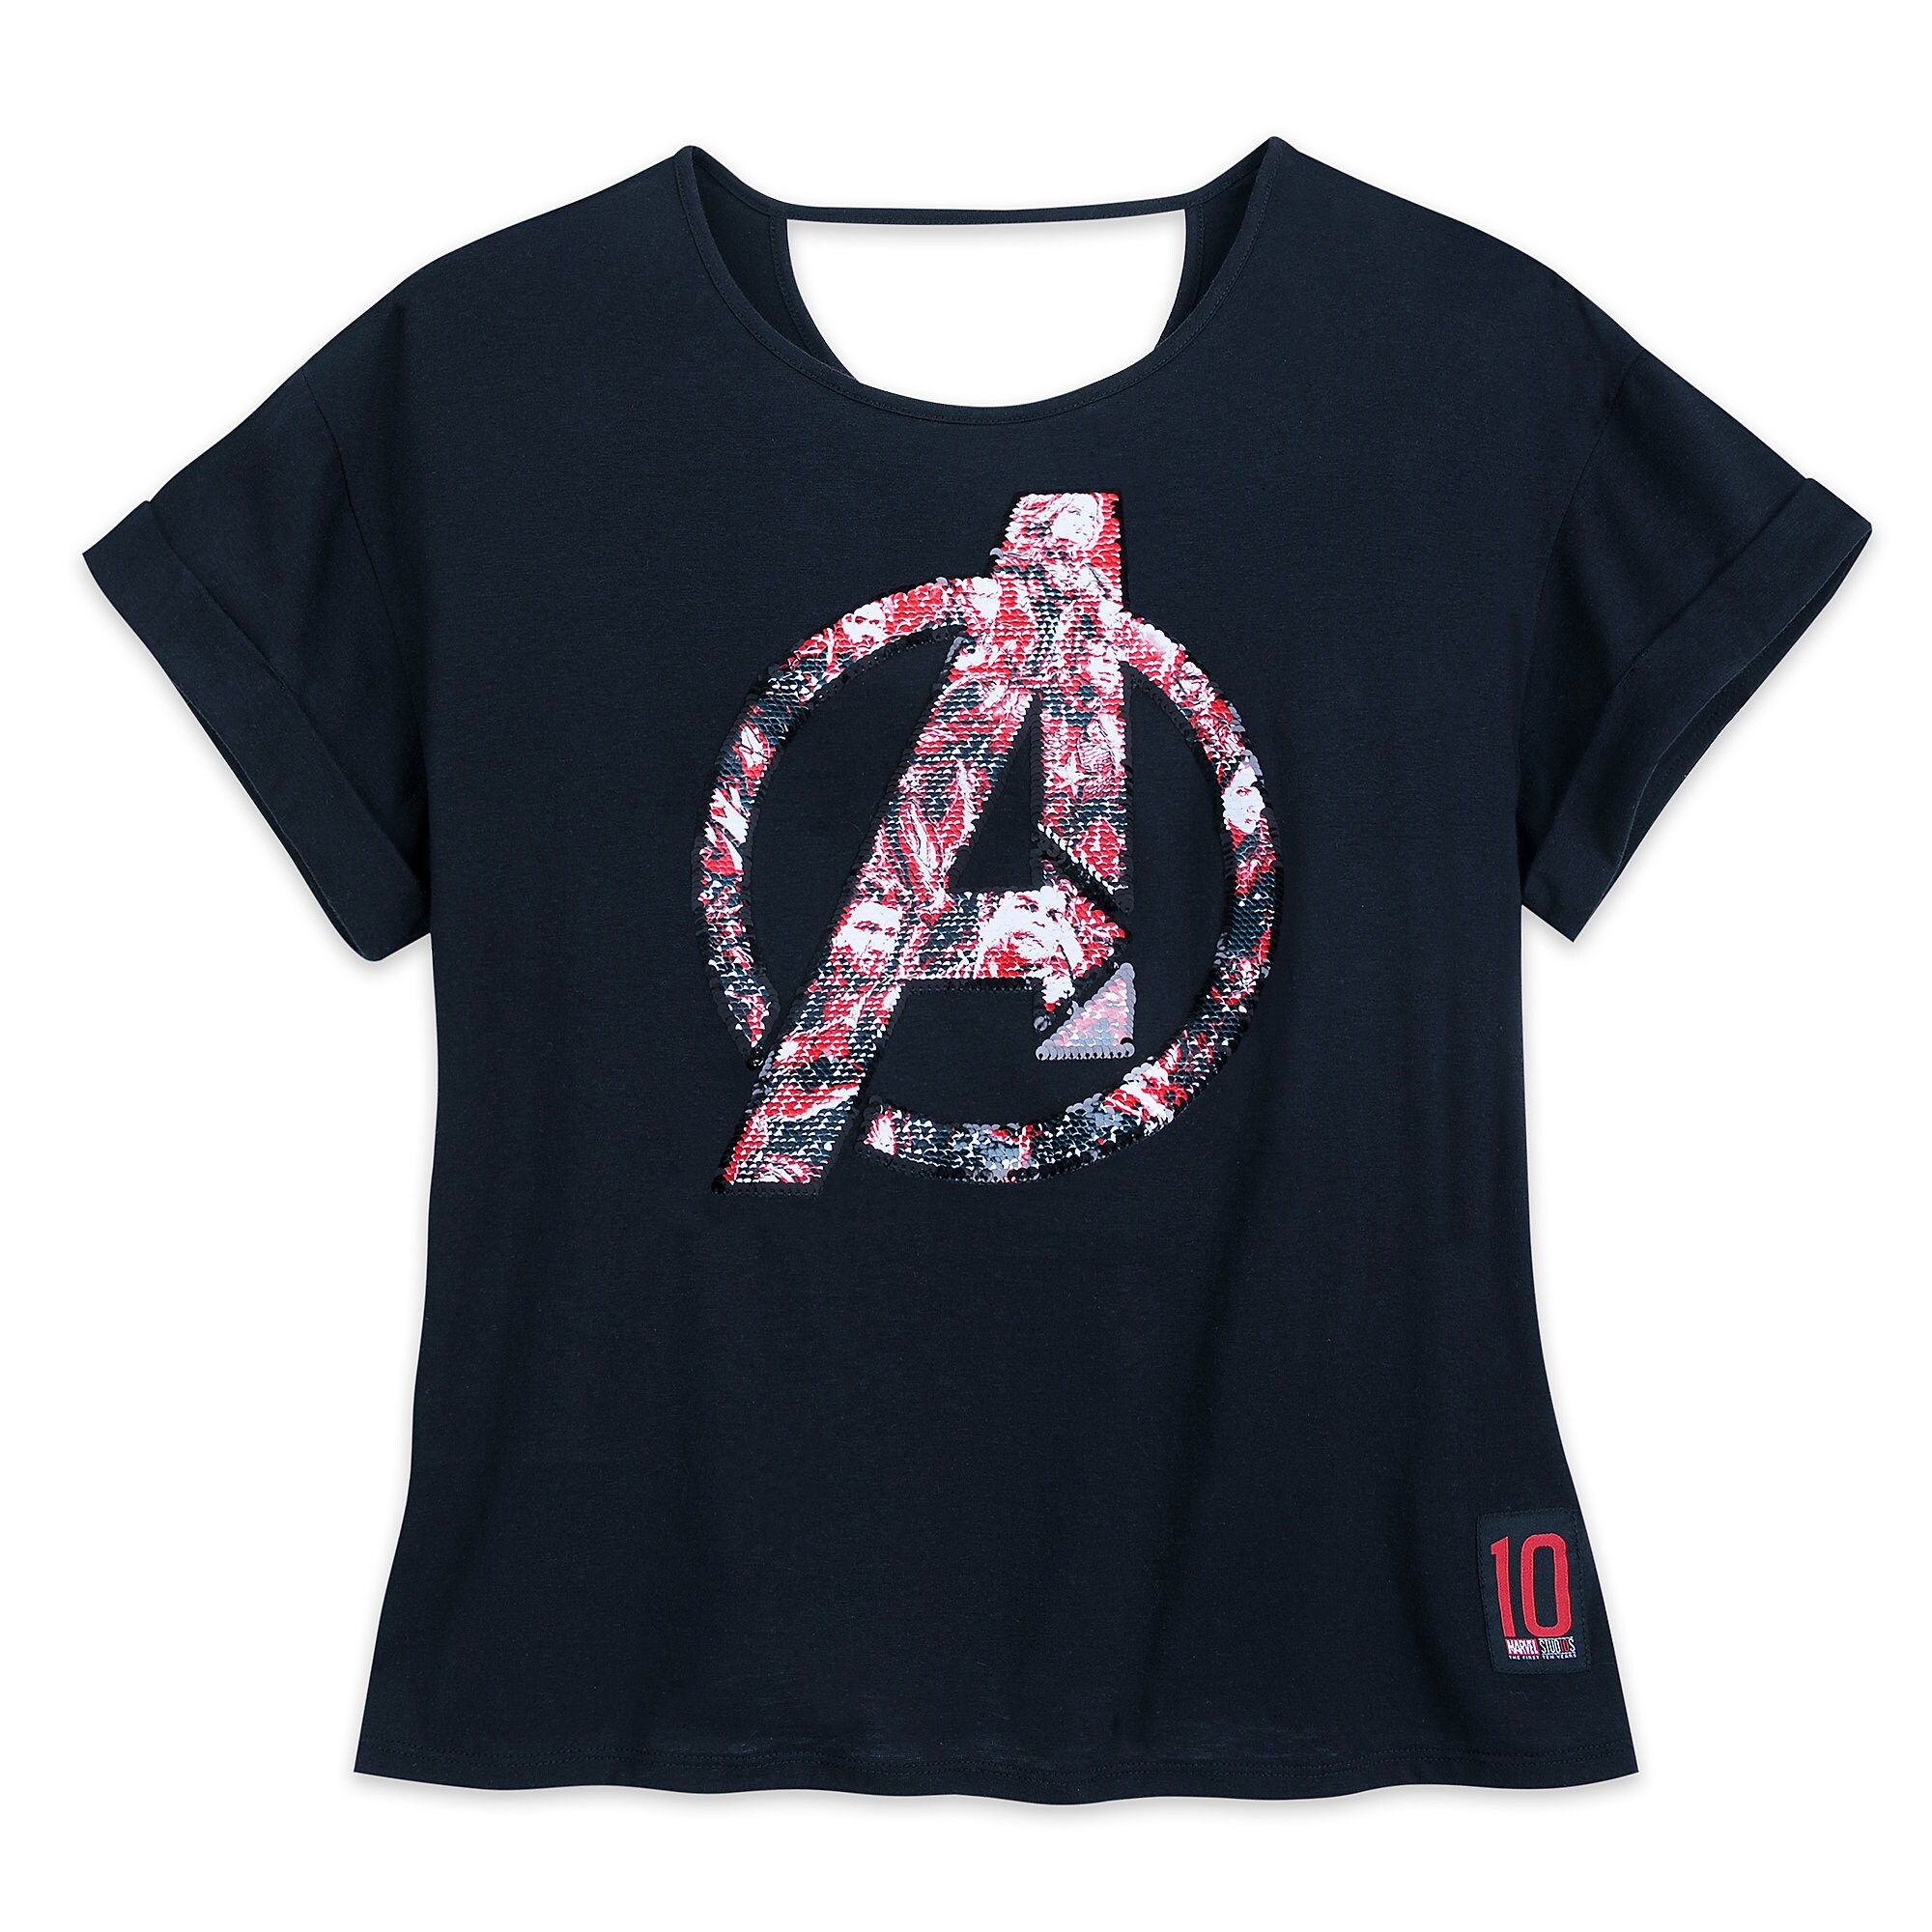 Marvel's Avengers: Endgame Reversible Sequin T-Shirt for Women